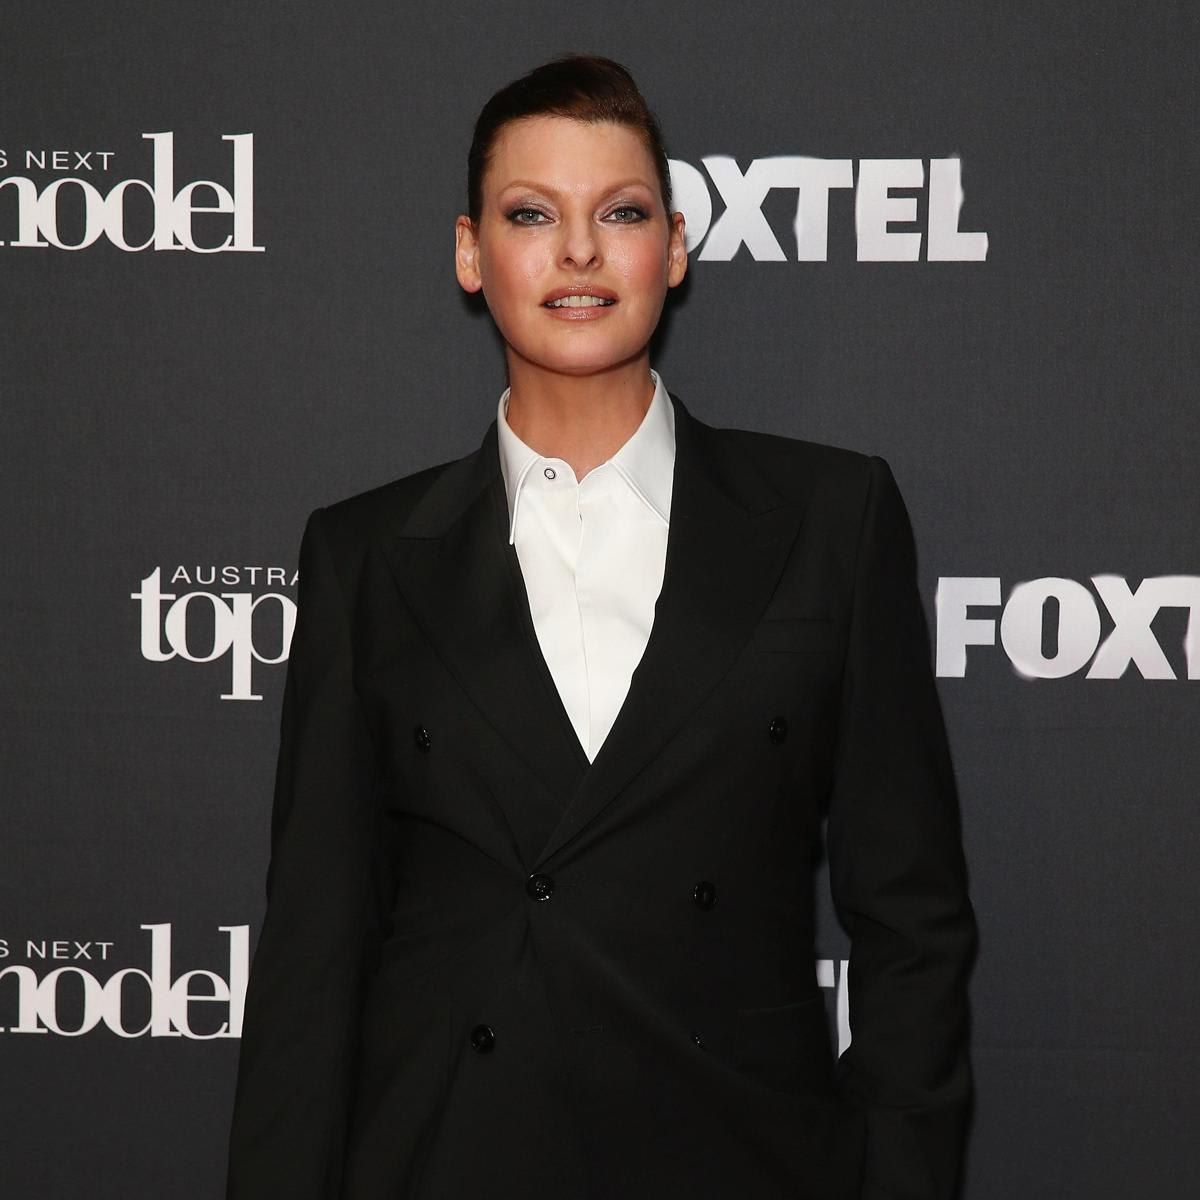 Australia's Next Top Model Welcomes Linda Evangelista